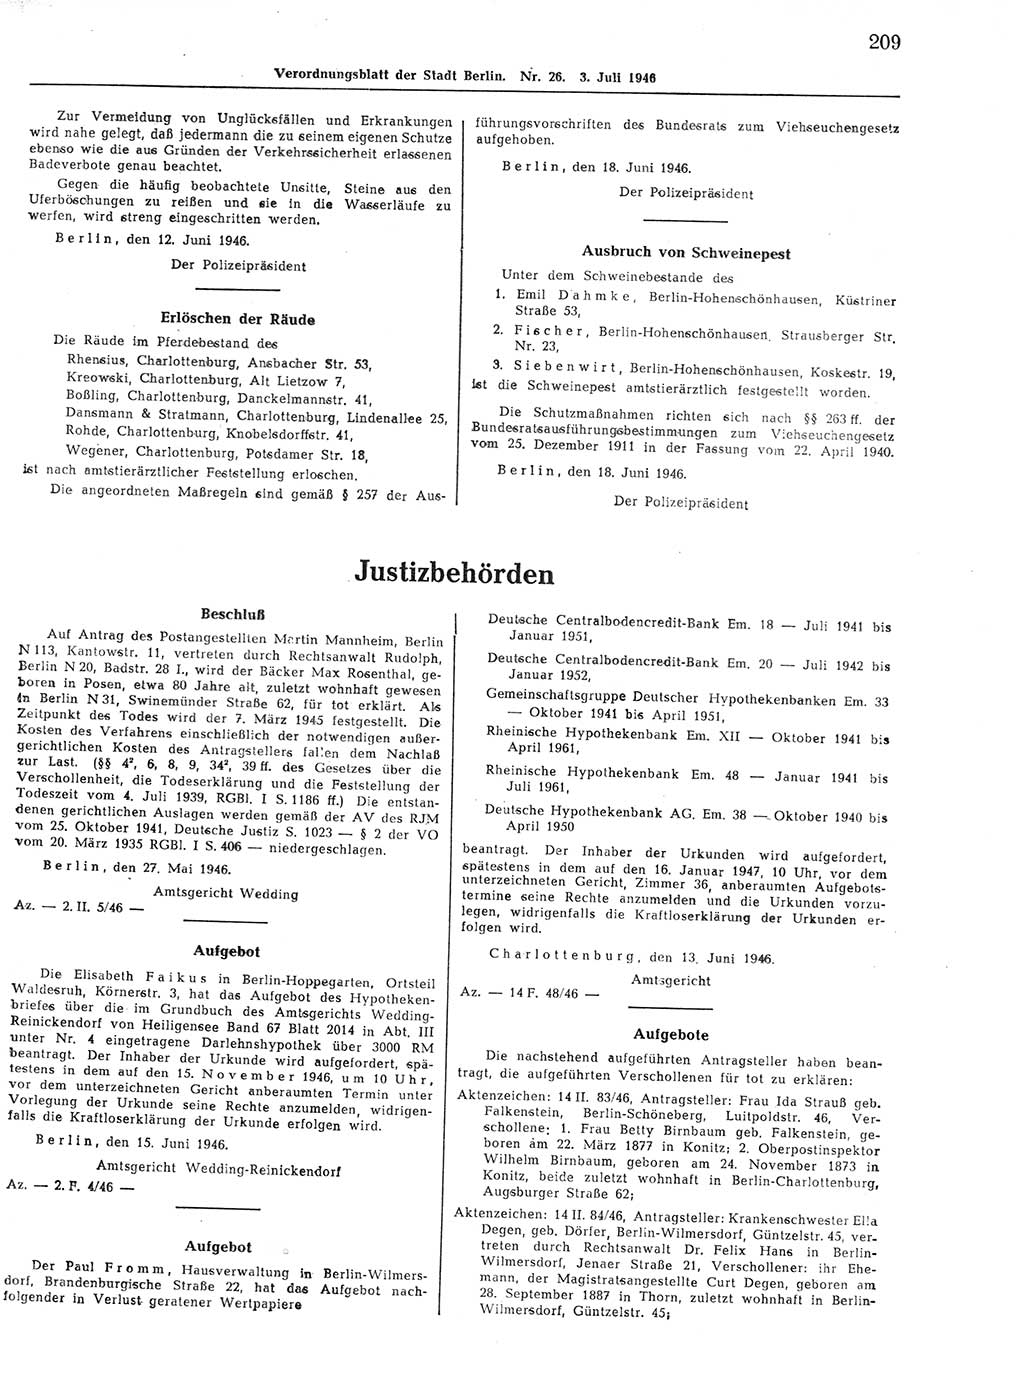 Verordnungsblatt (VOBl.) der Stadt Berlin, für Groß-Berlin 1946, Seite 209 (VOBl. Bln. 1946, S. 209)